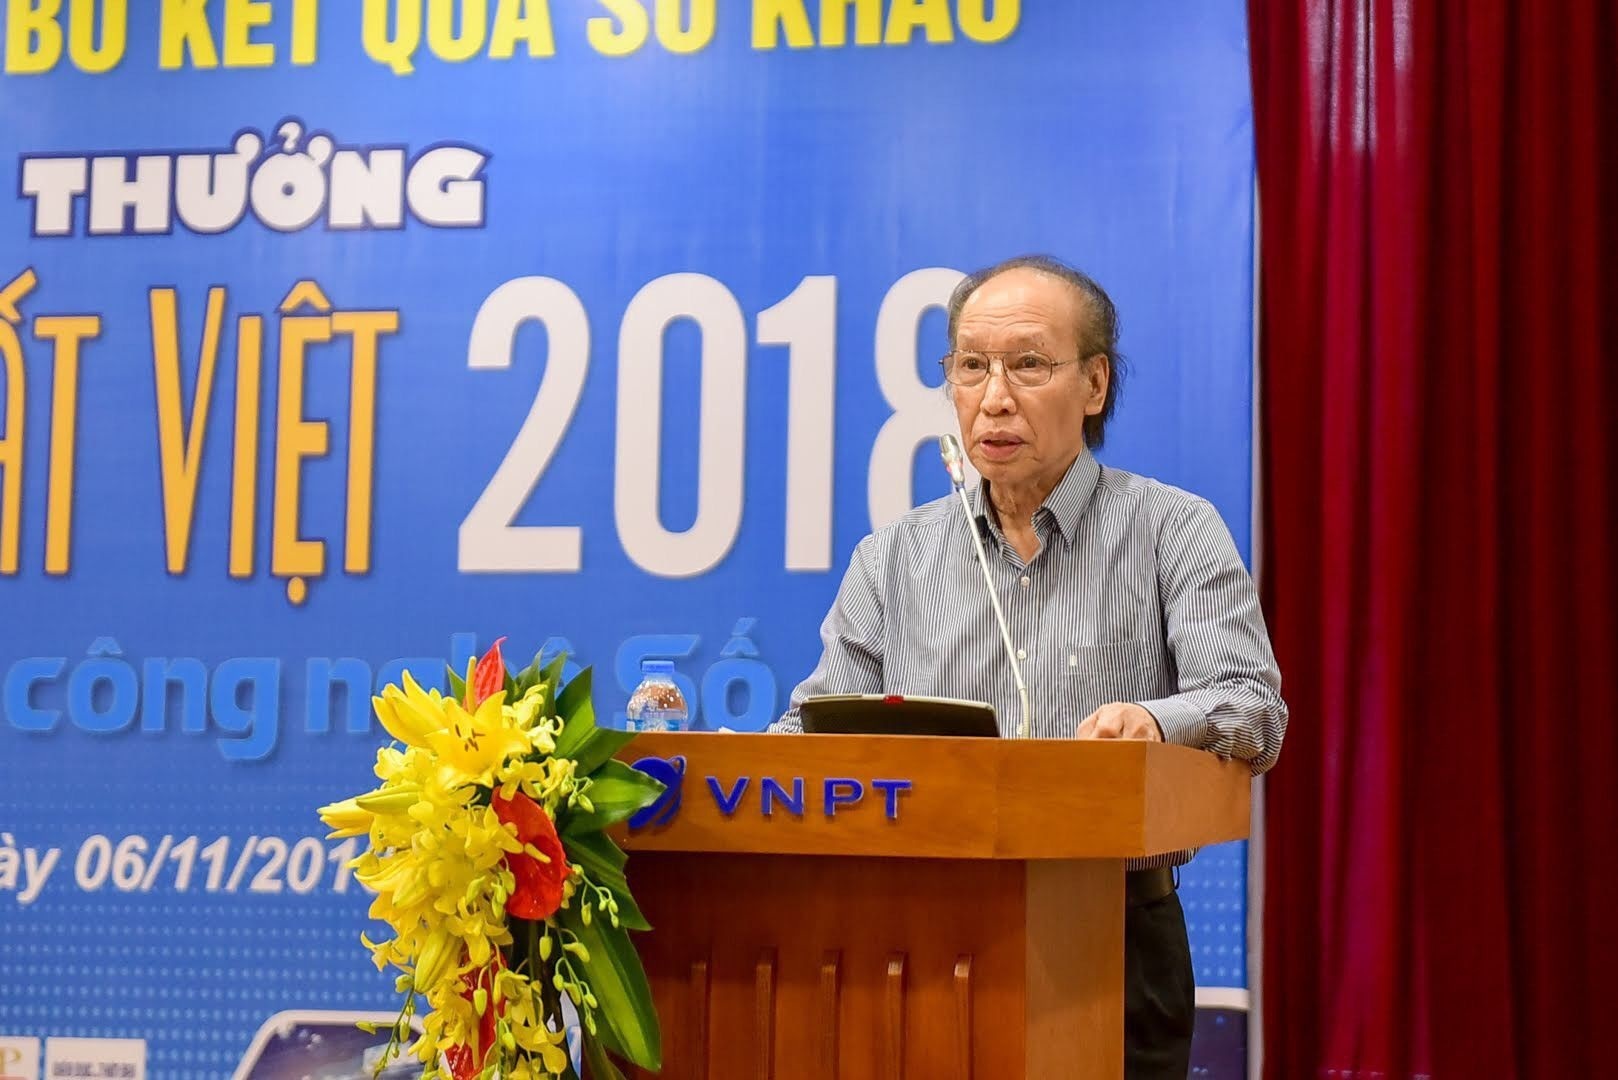  Nhà báo Phạm Huy Hoàn, Tổng Biên tập báo Dân trí, Trưởng ban tổ chức giải thưởng 